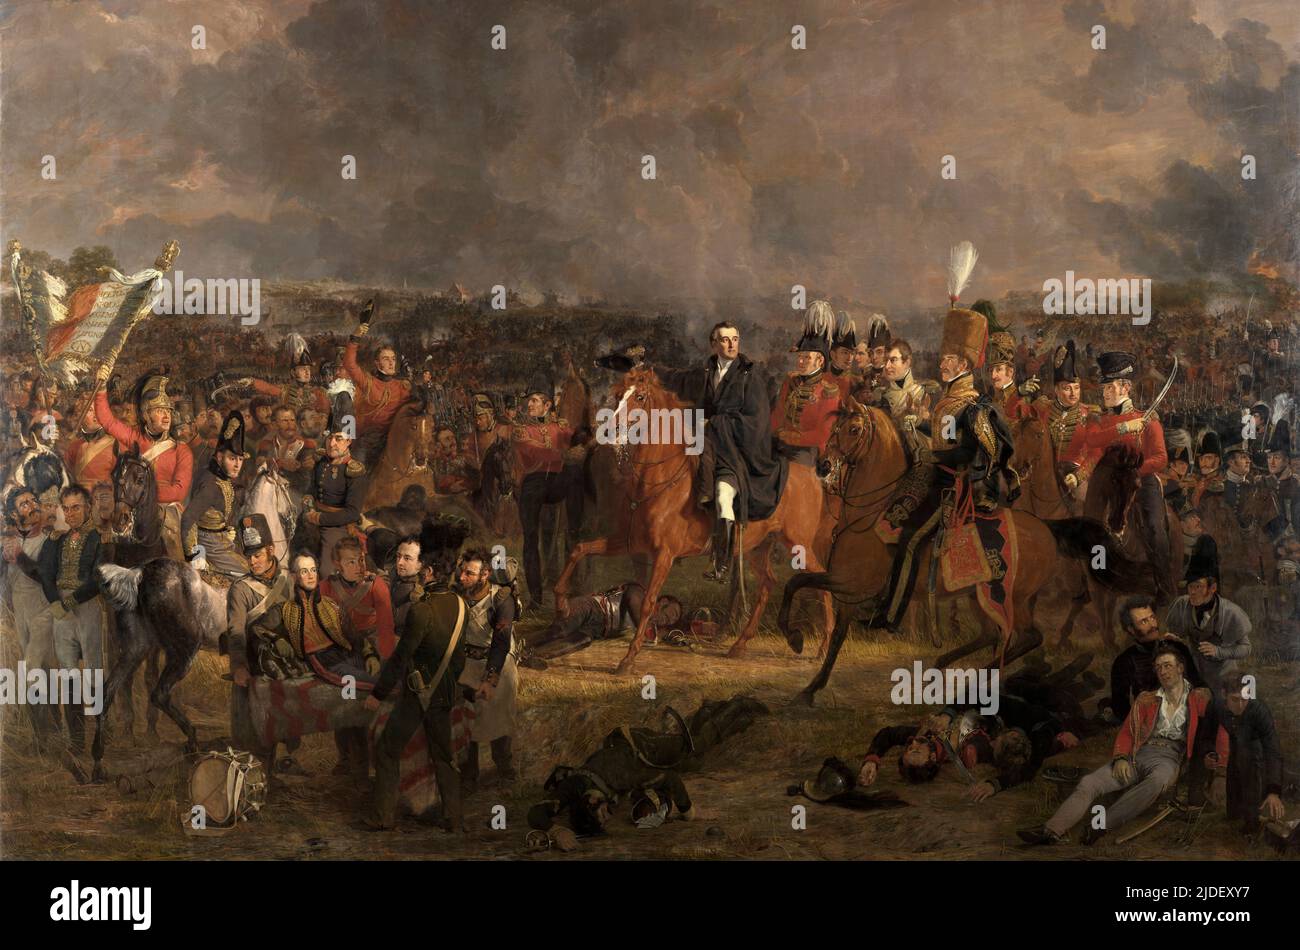 La bataille de Waterloo, Jan Willem Pieneman, 1824 - ici le duc de Wellington reçoit le message que les forces prussiennes viennent à son secours. Wellington, commandant des troupes anglo-néerlandaises, est la figure centrale de ce portrait de groupe des principaux joueurs de Waterloo. Le prince héritier hollandais, plus tard le roi Guillaume II, est blessé sur une civière située à gauche Banque D'Images